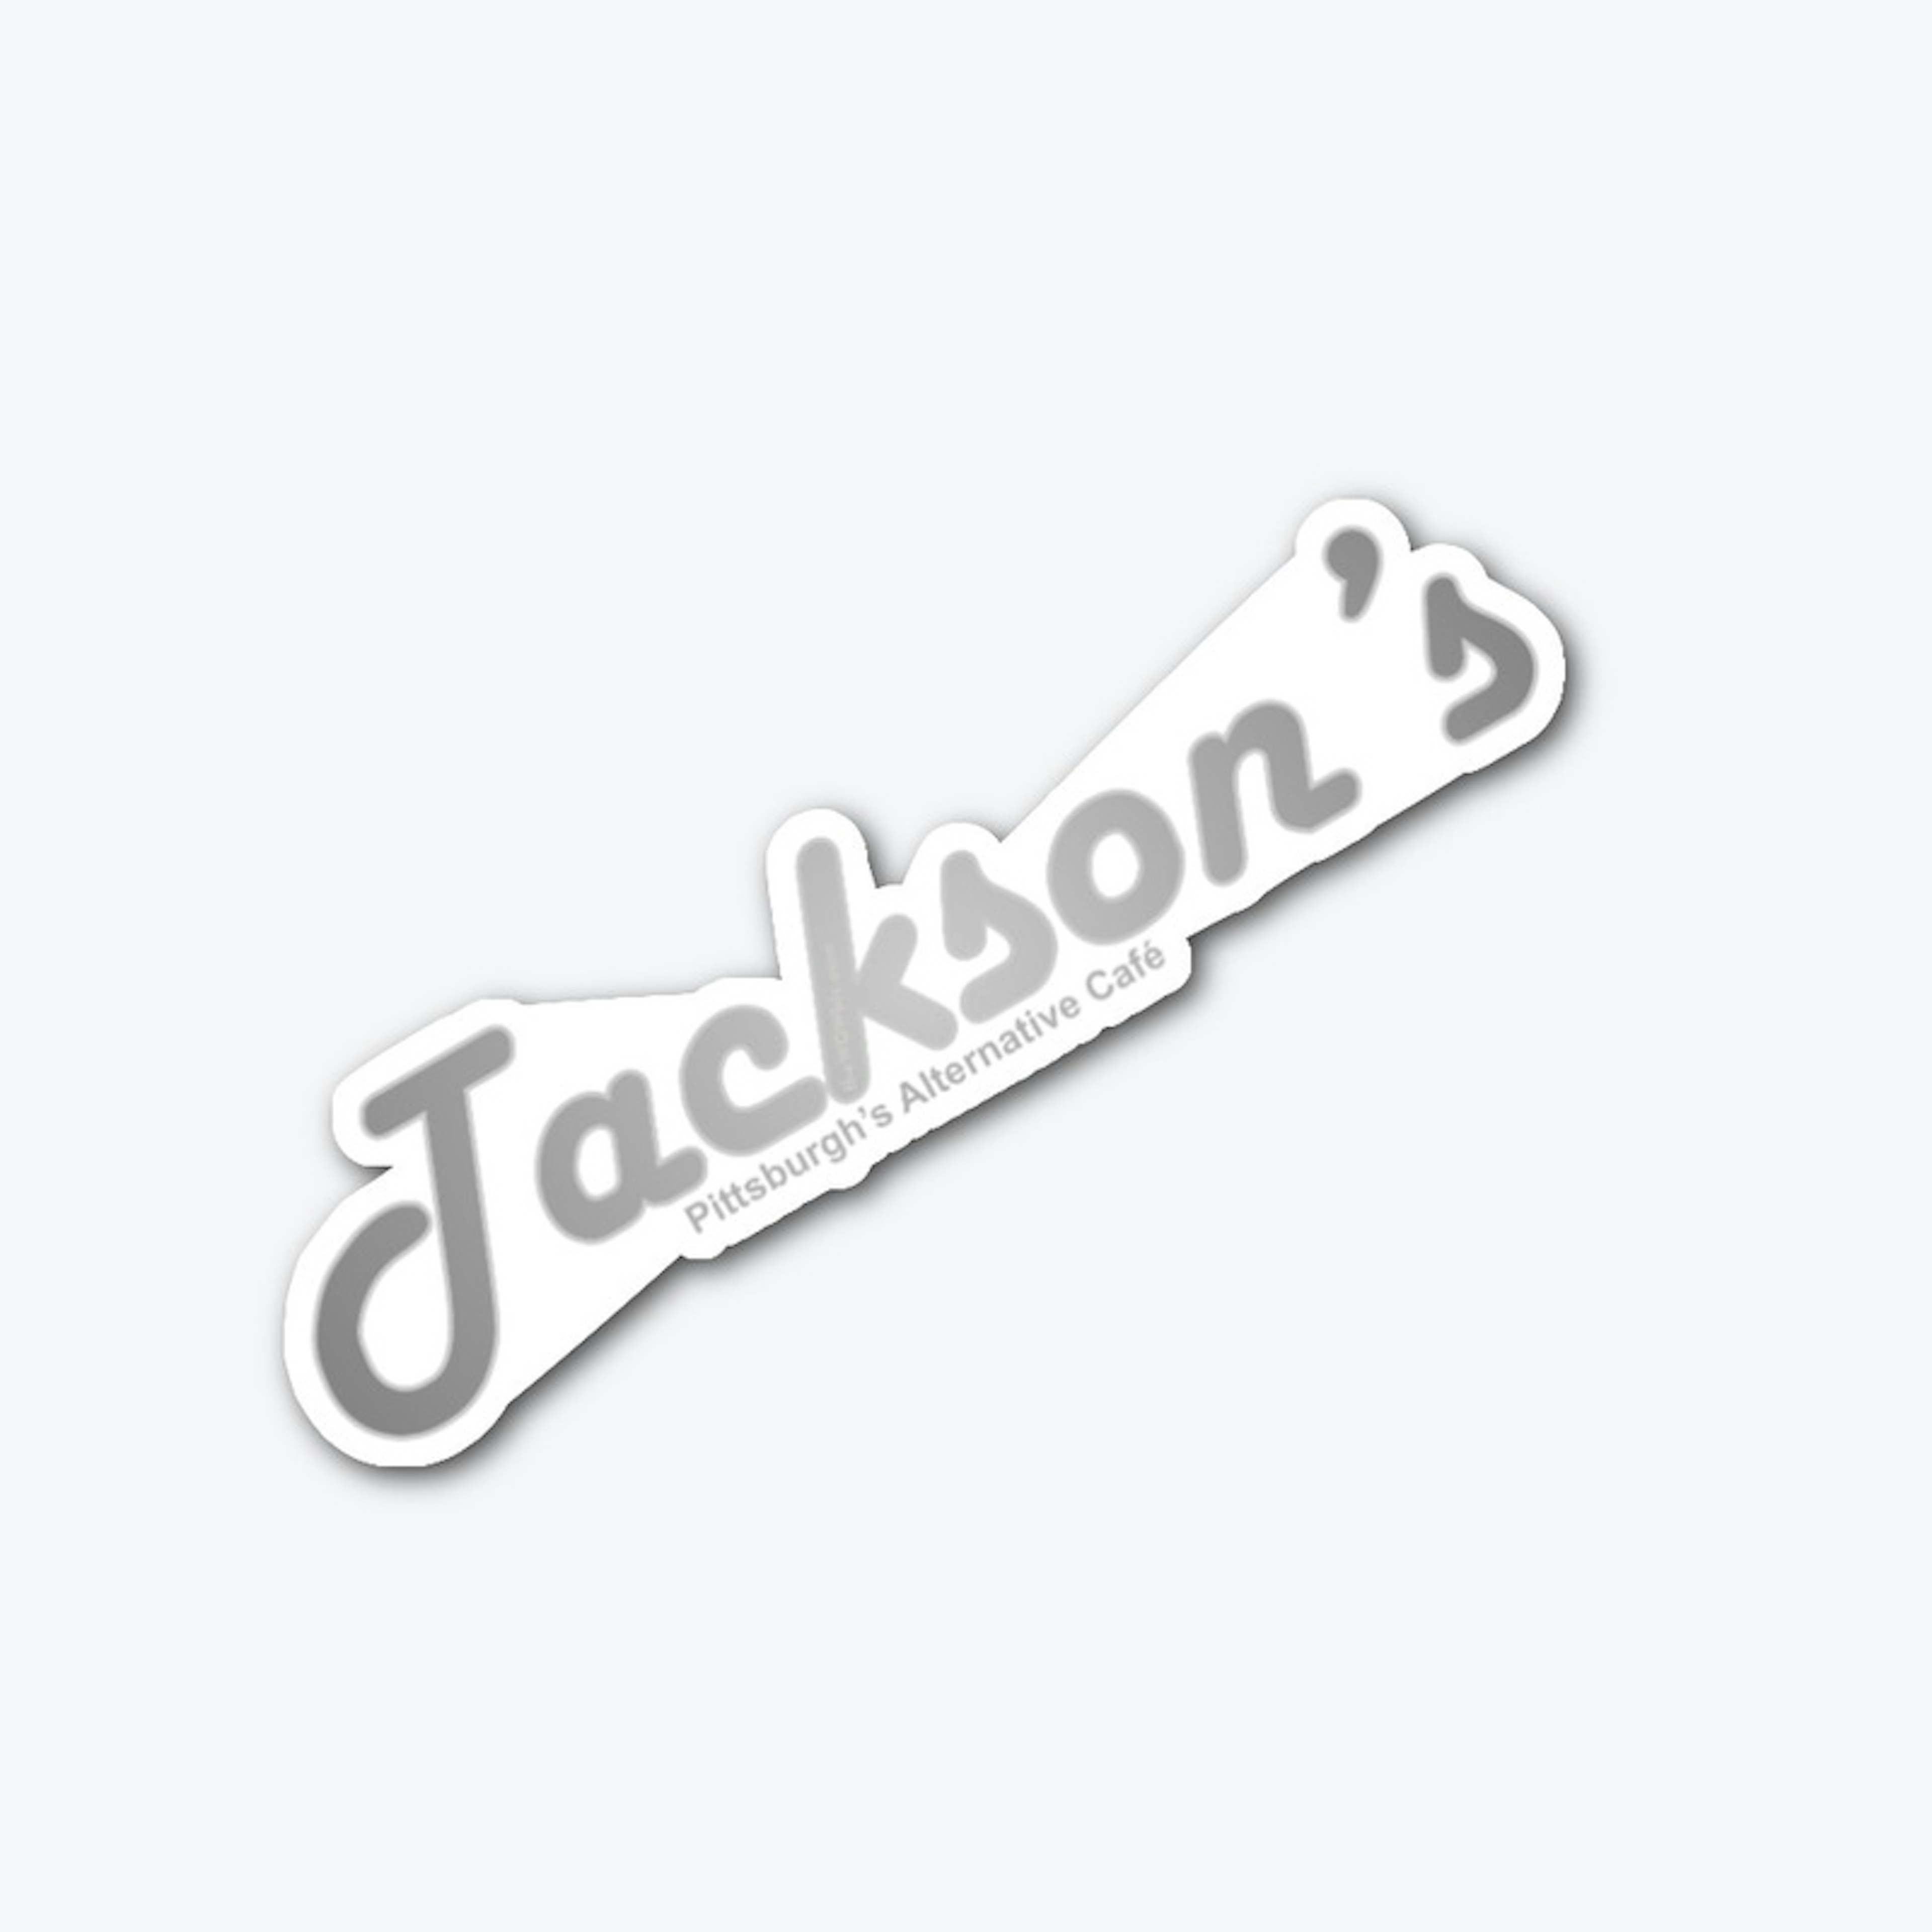 JacksonsPGH